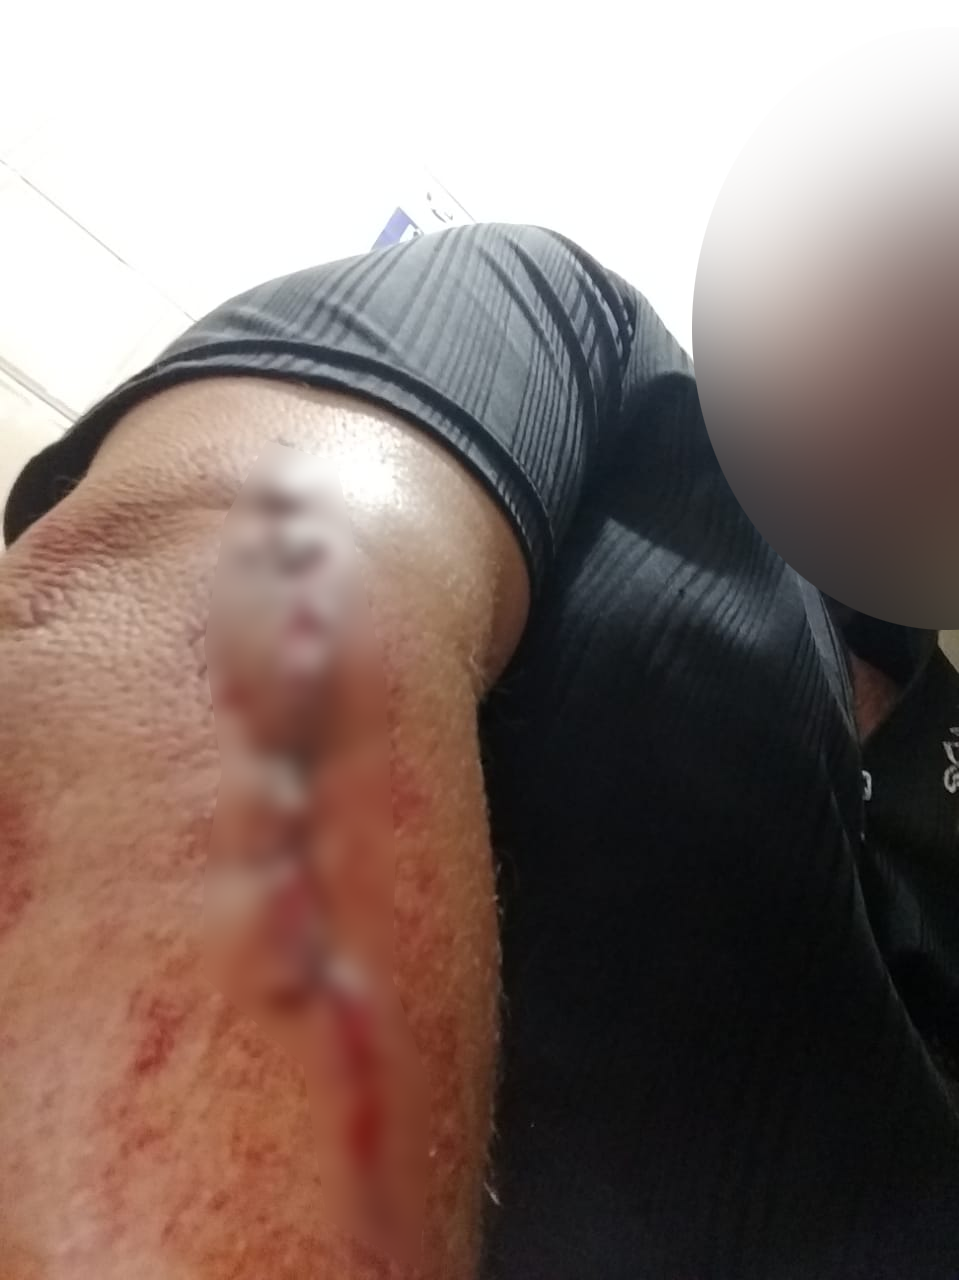 Subtenente teve braço baleado durante crime, na terça-feira (25) 